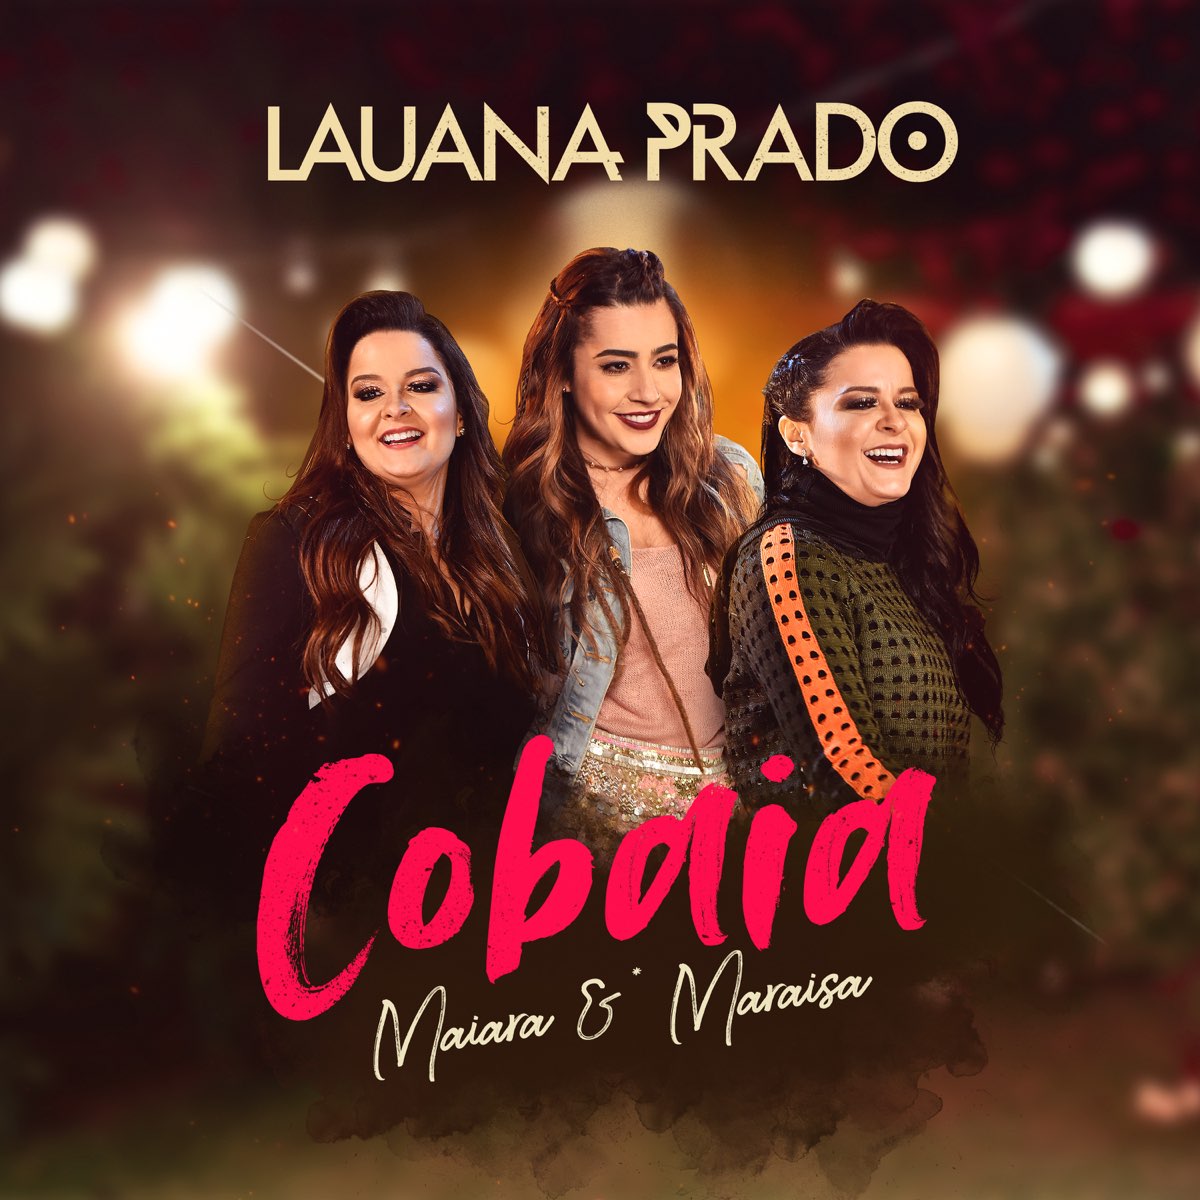 Cobaia - Single by Lauana Prado & Maiara & Maraisa on Apple Music